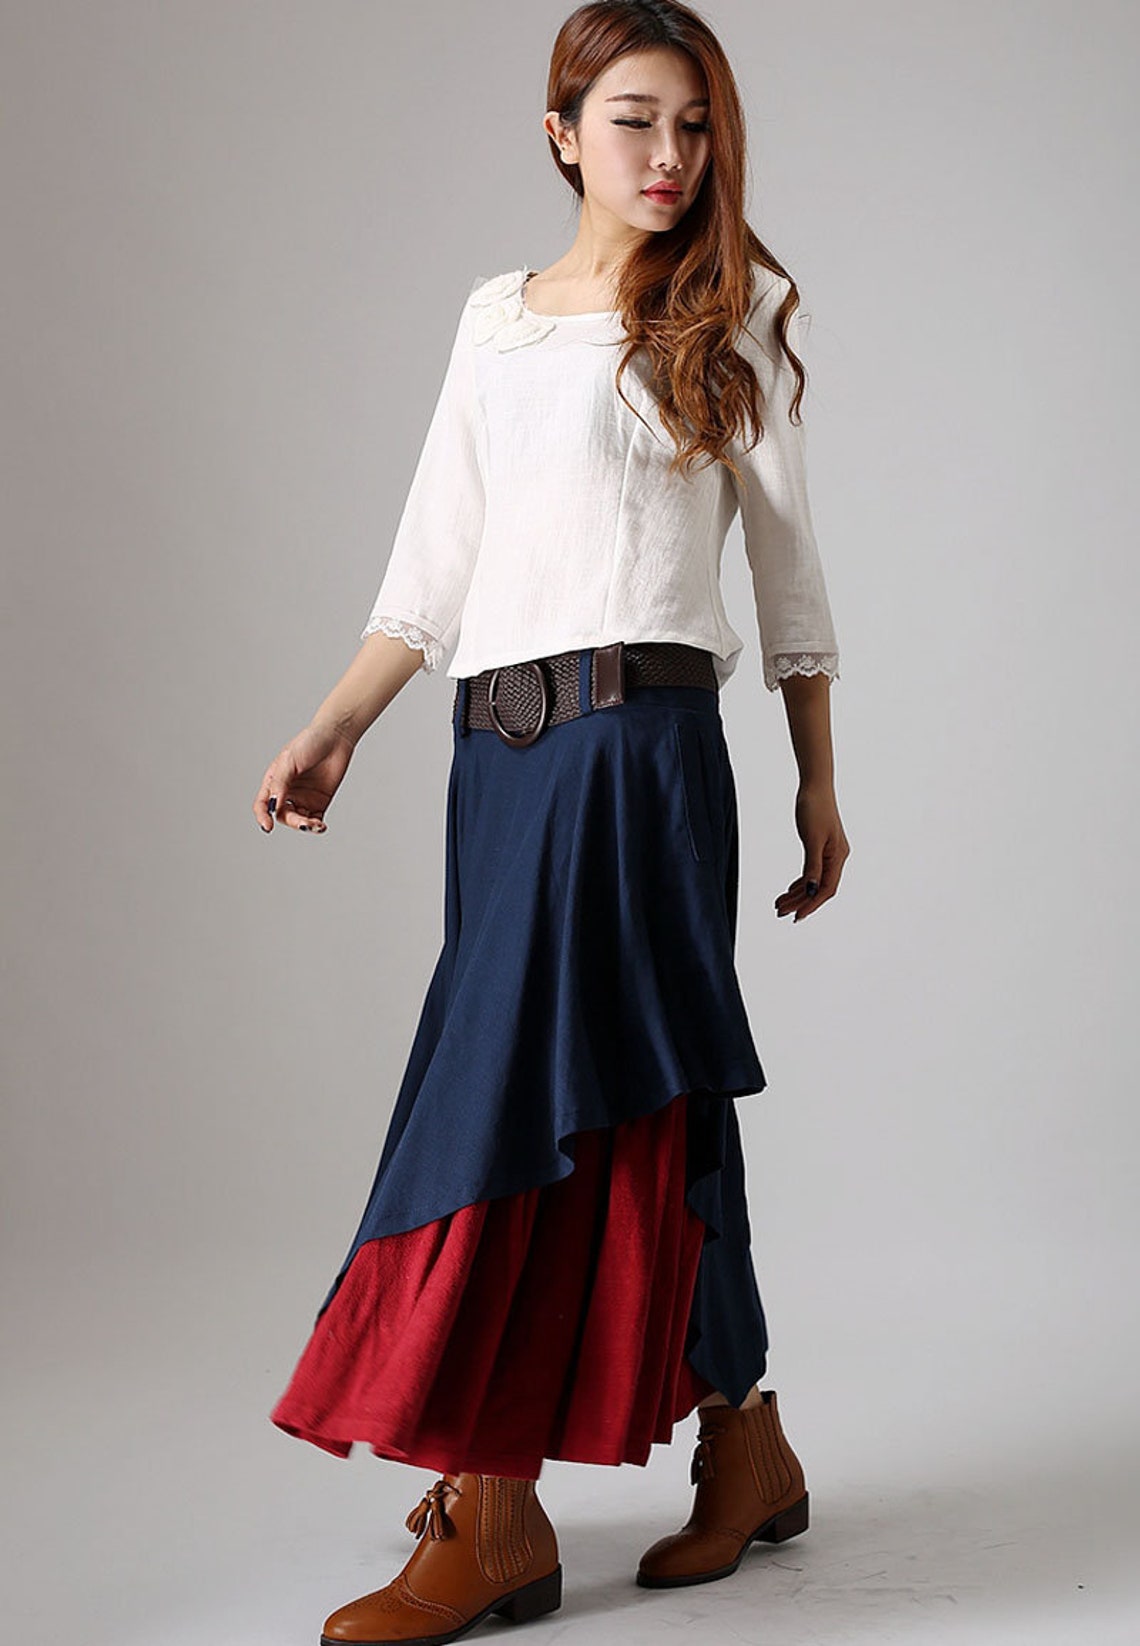 Long linen Skirt blue linen Skirts Maxi Skirts Maxi linen | Etsy